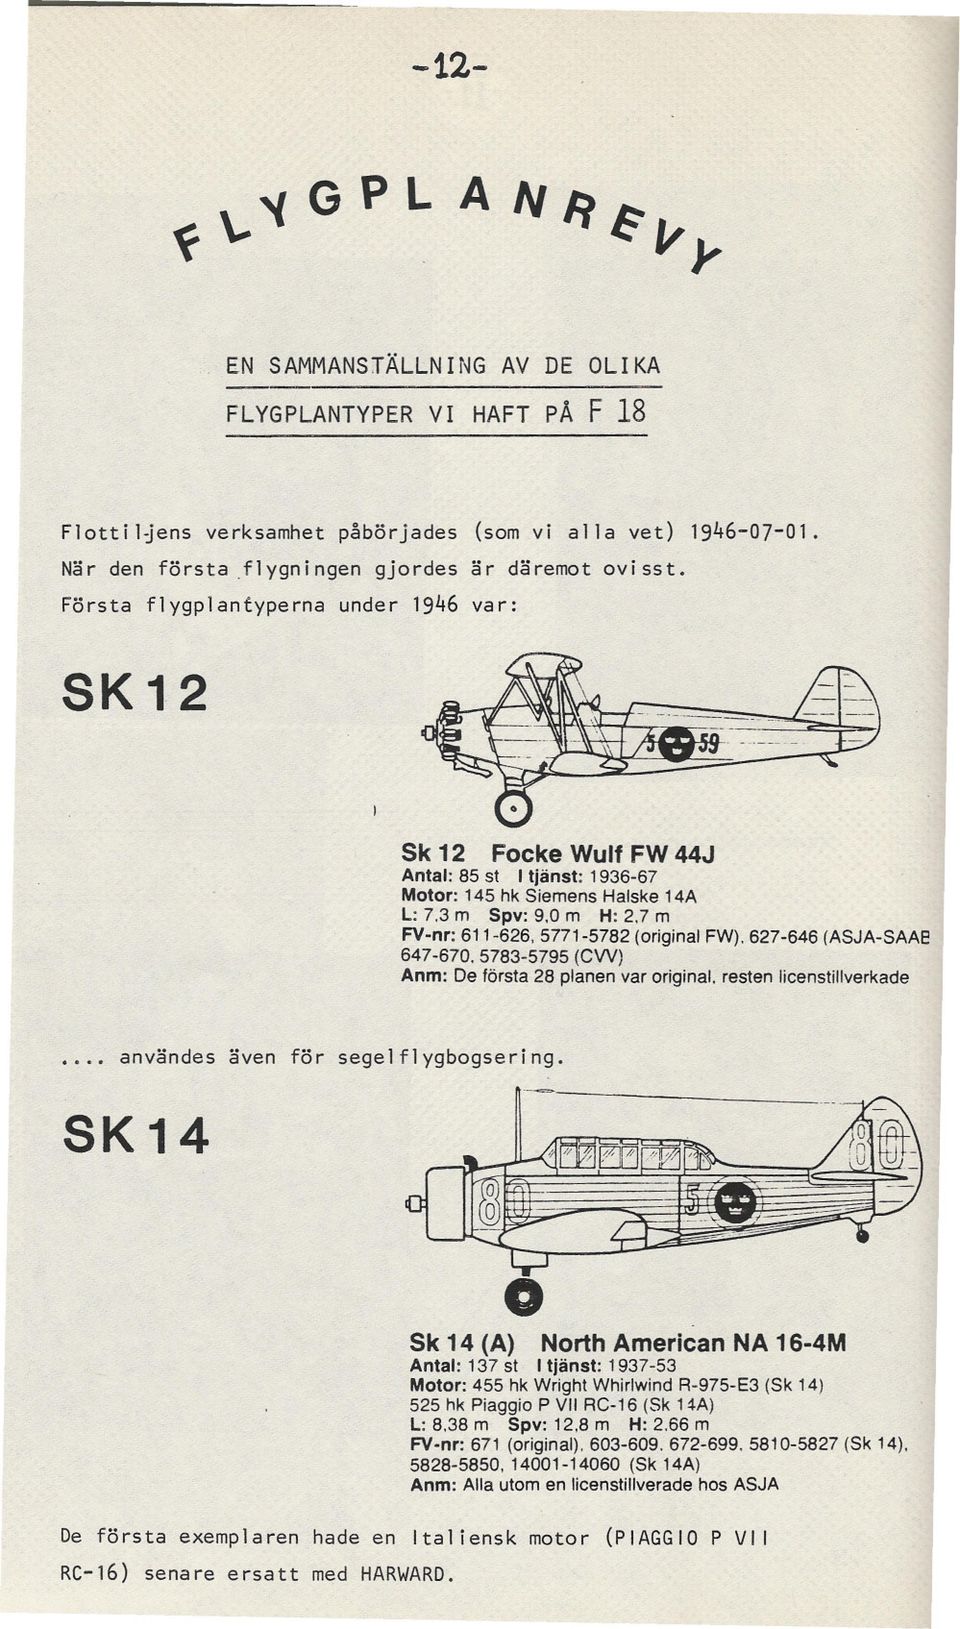 7 m FV-nr: 611-626, 5771-5782 (originalfw). 627-646 (ASJA-SAAE! 647-670.5783-5795 (CW) Anm: De första 28 planen var original. resten licenstillverkade användes även för segelflygbogsering. SK14.-v.